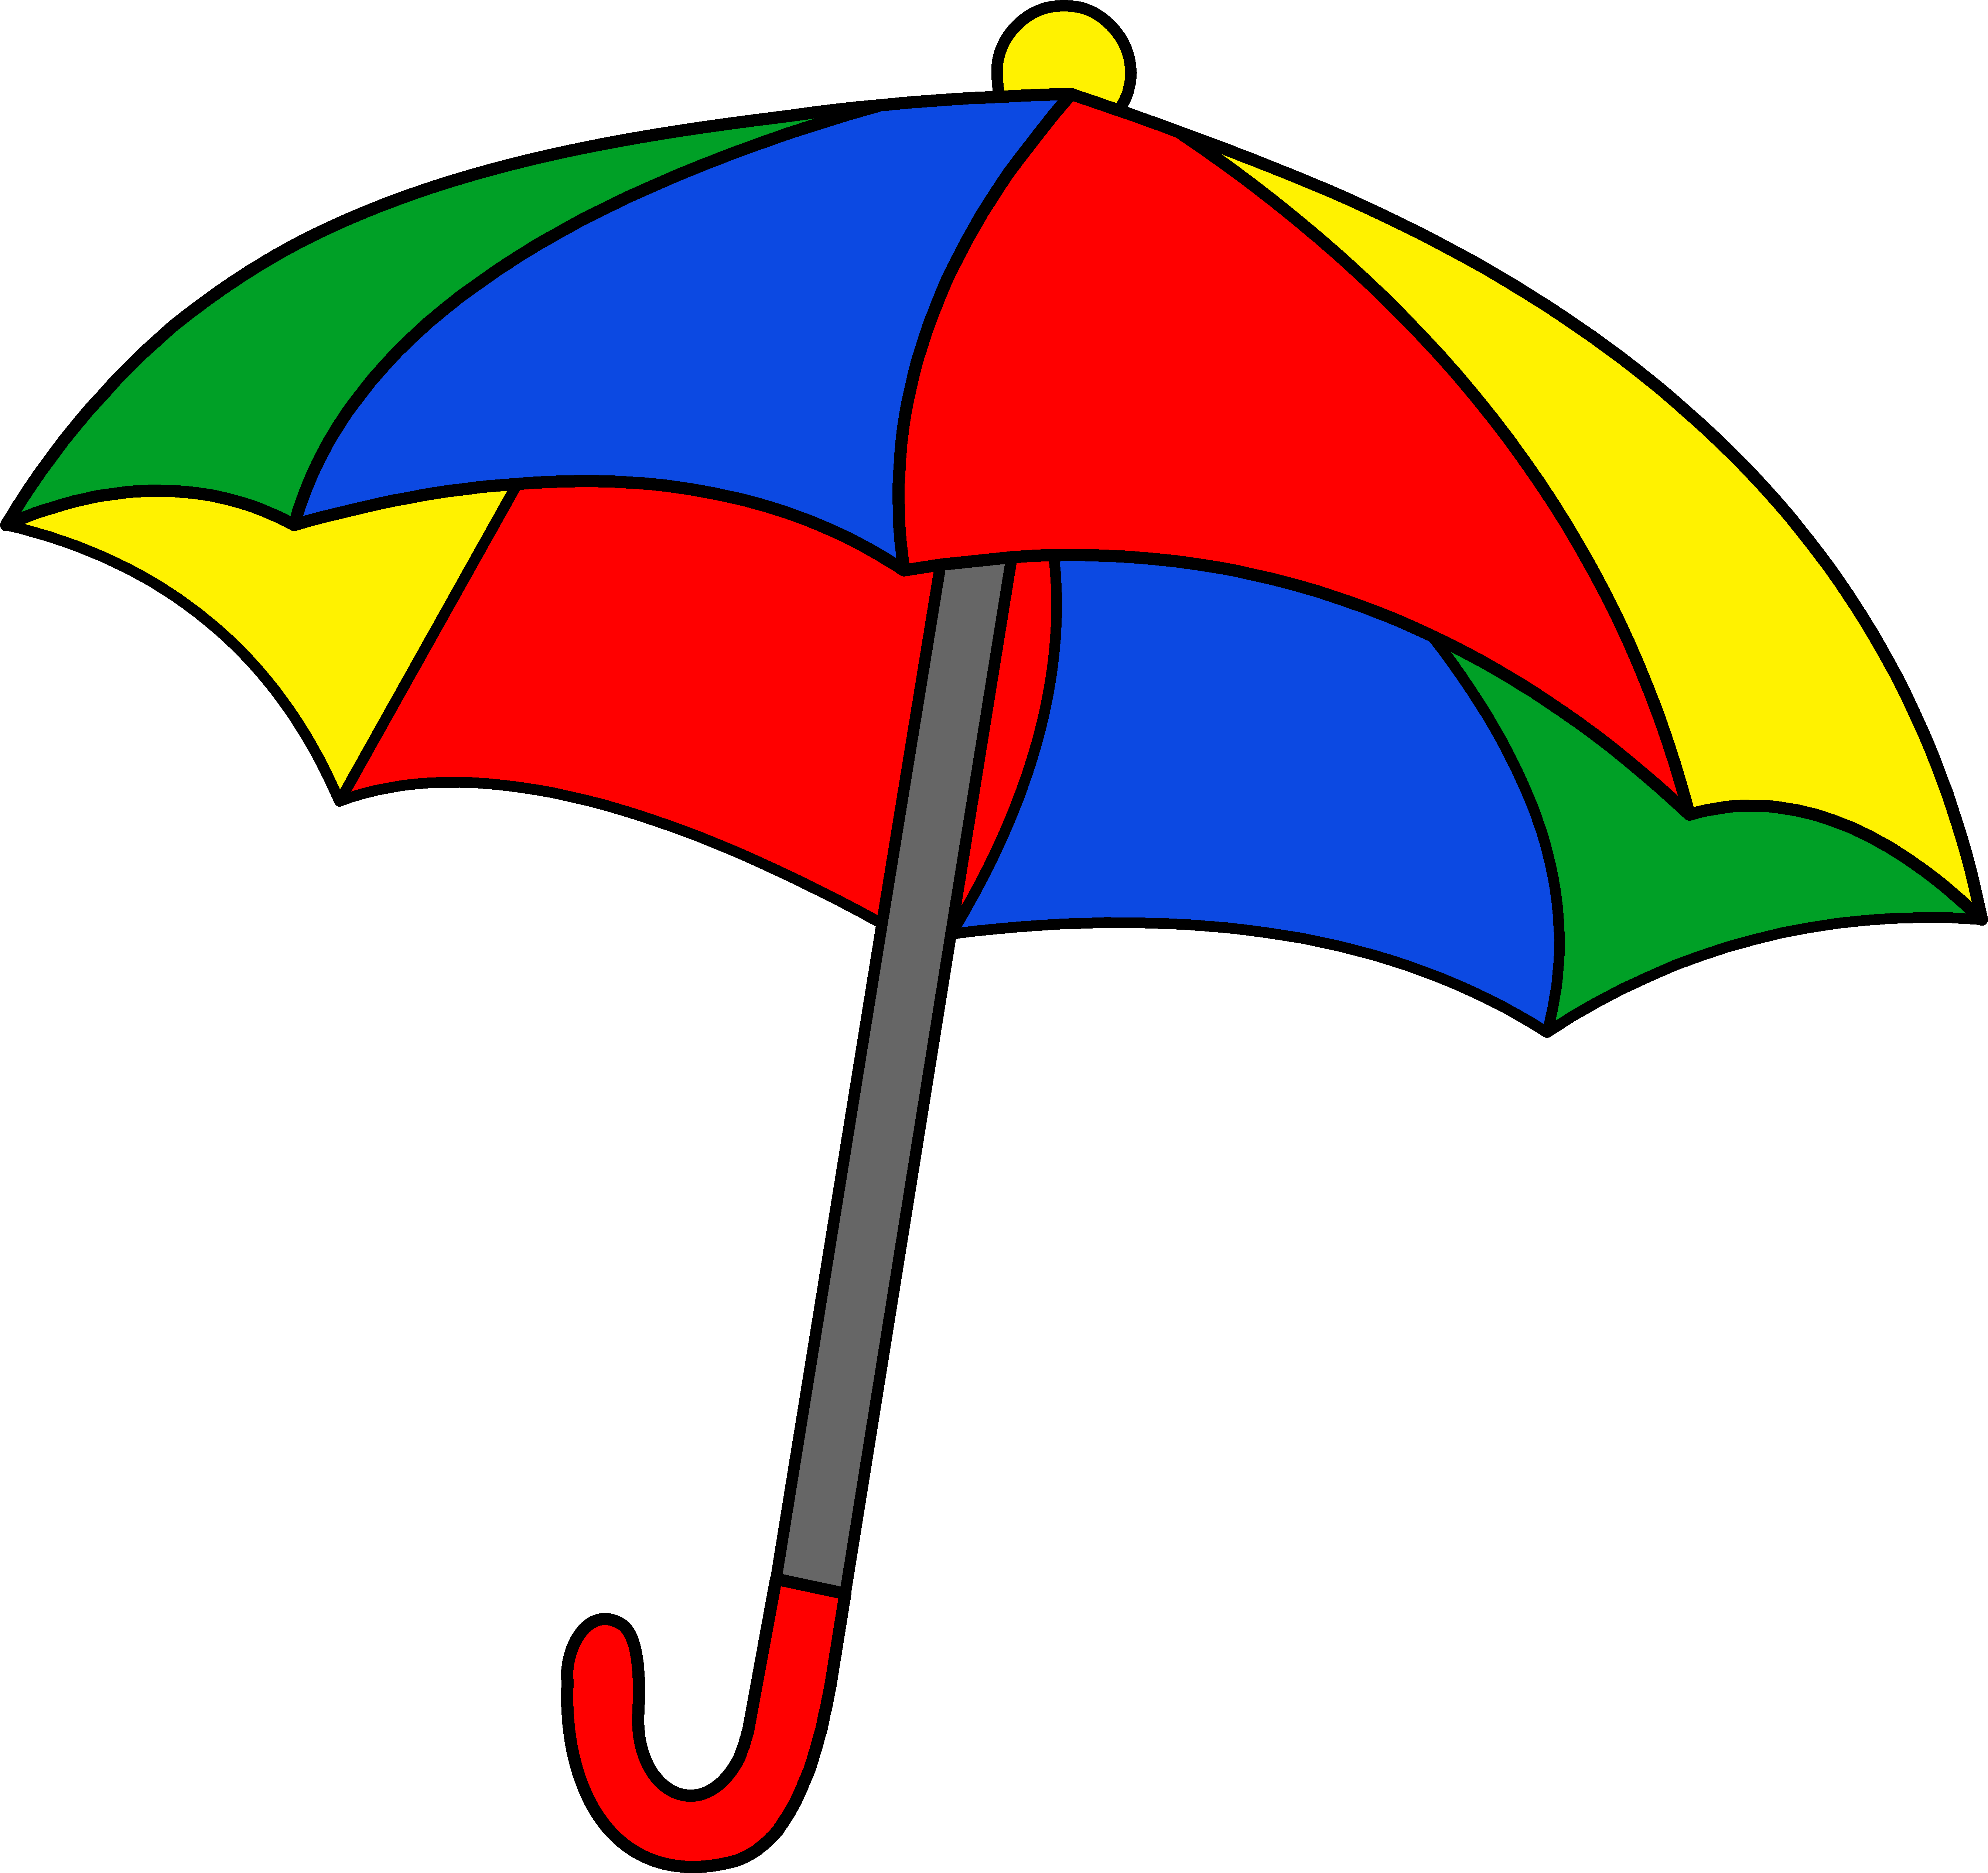 Umbrella clipart #3, Download drawings